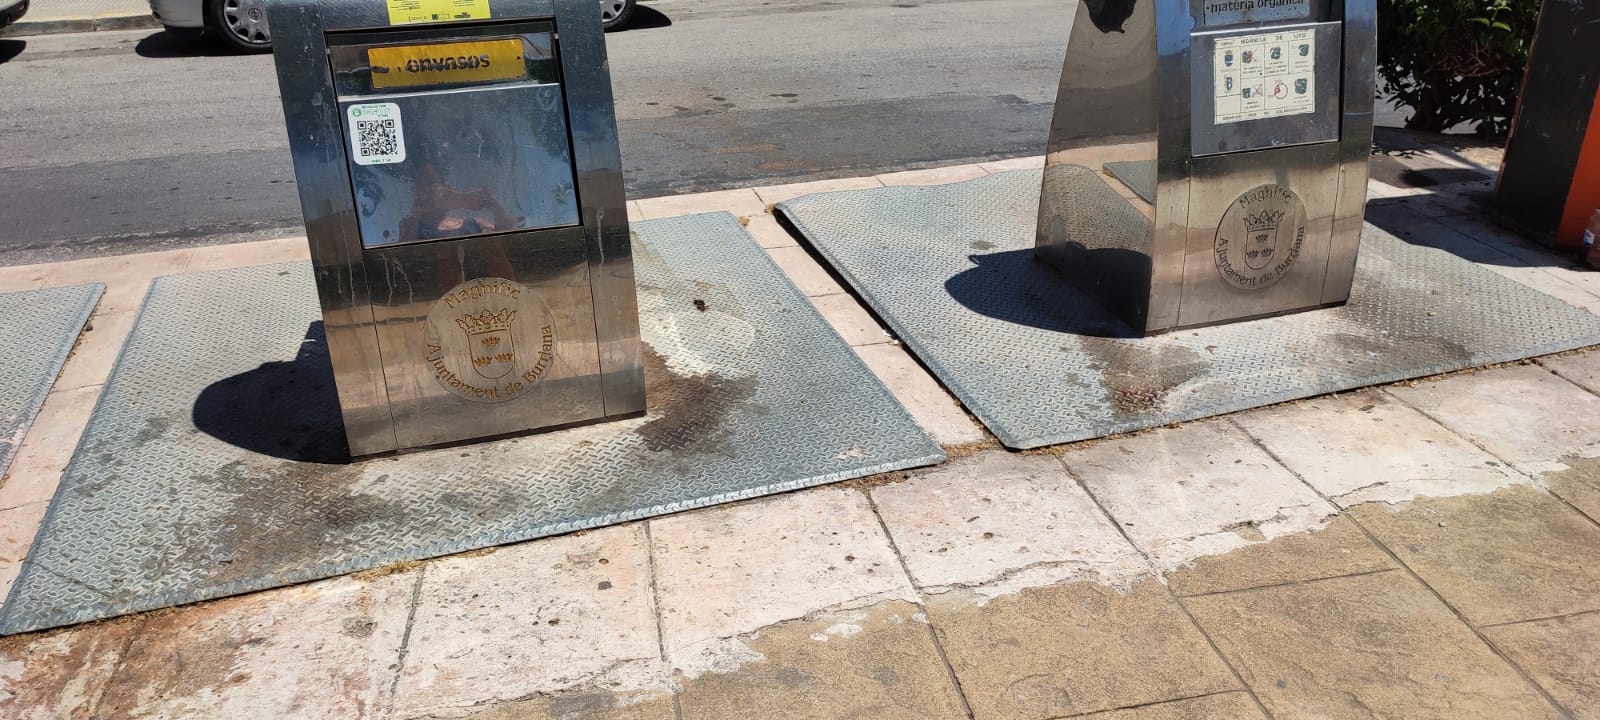 El PP de Burriana reclama un plan de limpieza de vía pública que contribuya a mejorar la imagen de la ciudad